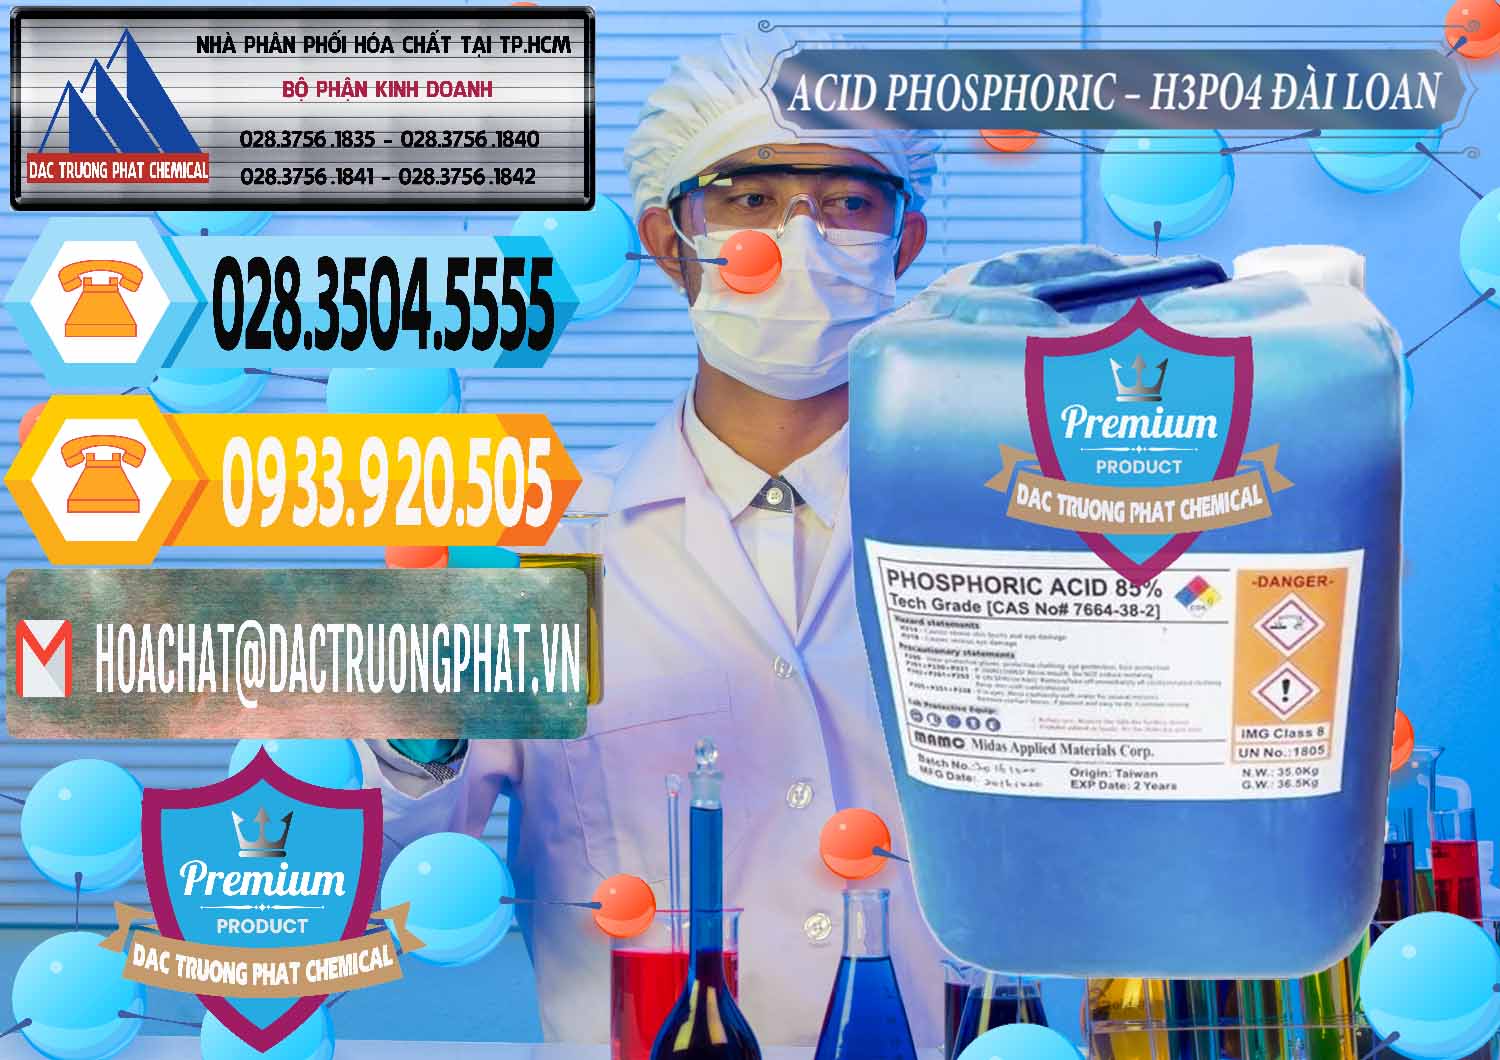 Đơn vị cung cấp & bán Axit Phosphoric - Acid Phosphoric H3PO4 85% Đài Loan Taiwan - 0351 - Cty chuyên bán _ cung cấp hóa chất tại TP.HCM - hoachattayrua.net